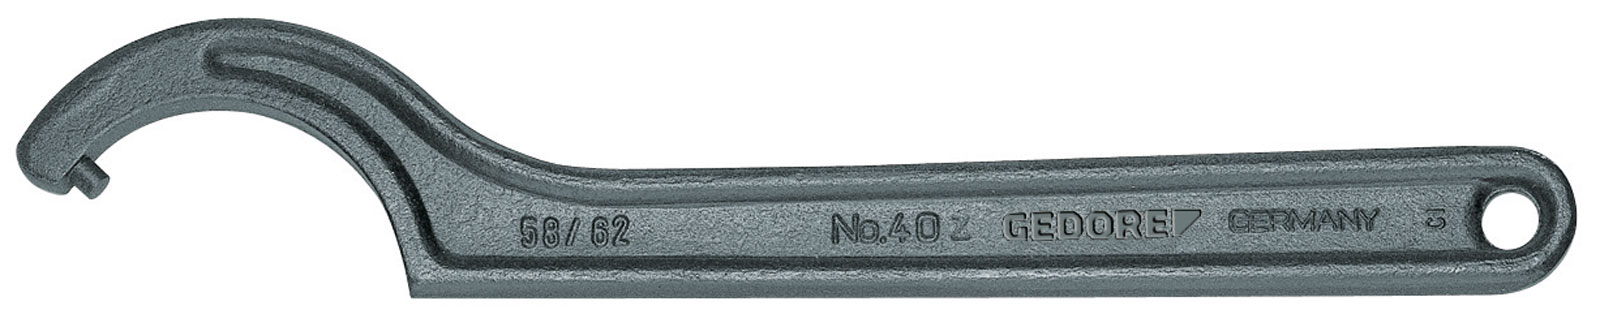 Bild von 40 Z 40-42 Hakenschlüssel, DIN 1810 Form B, 40-42 mm